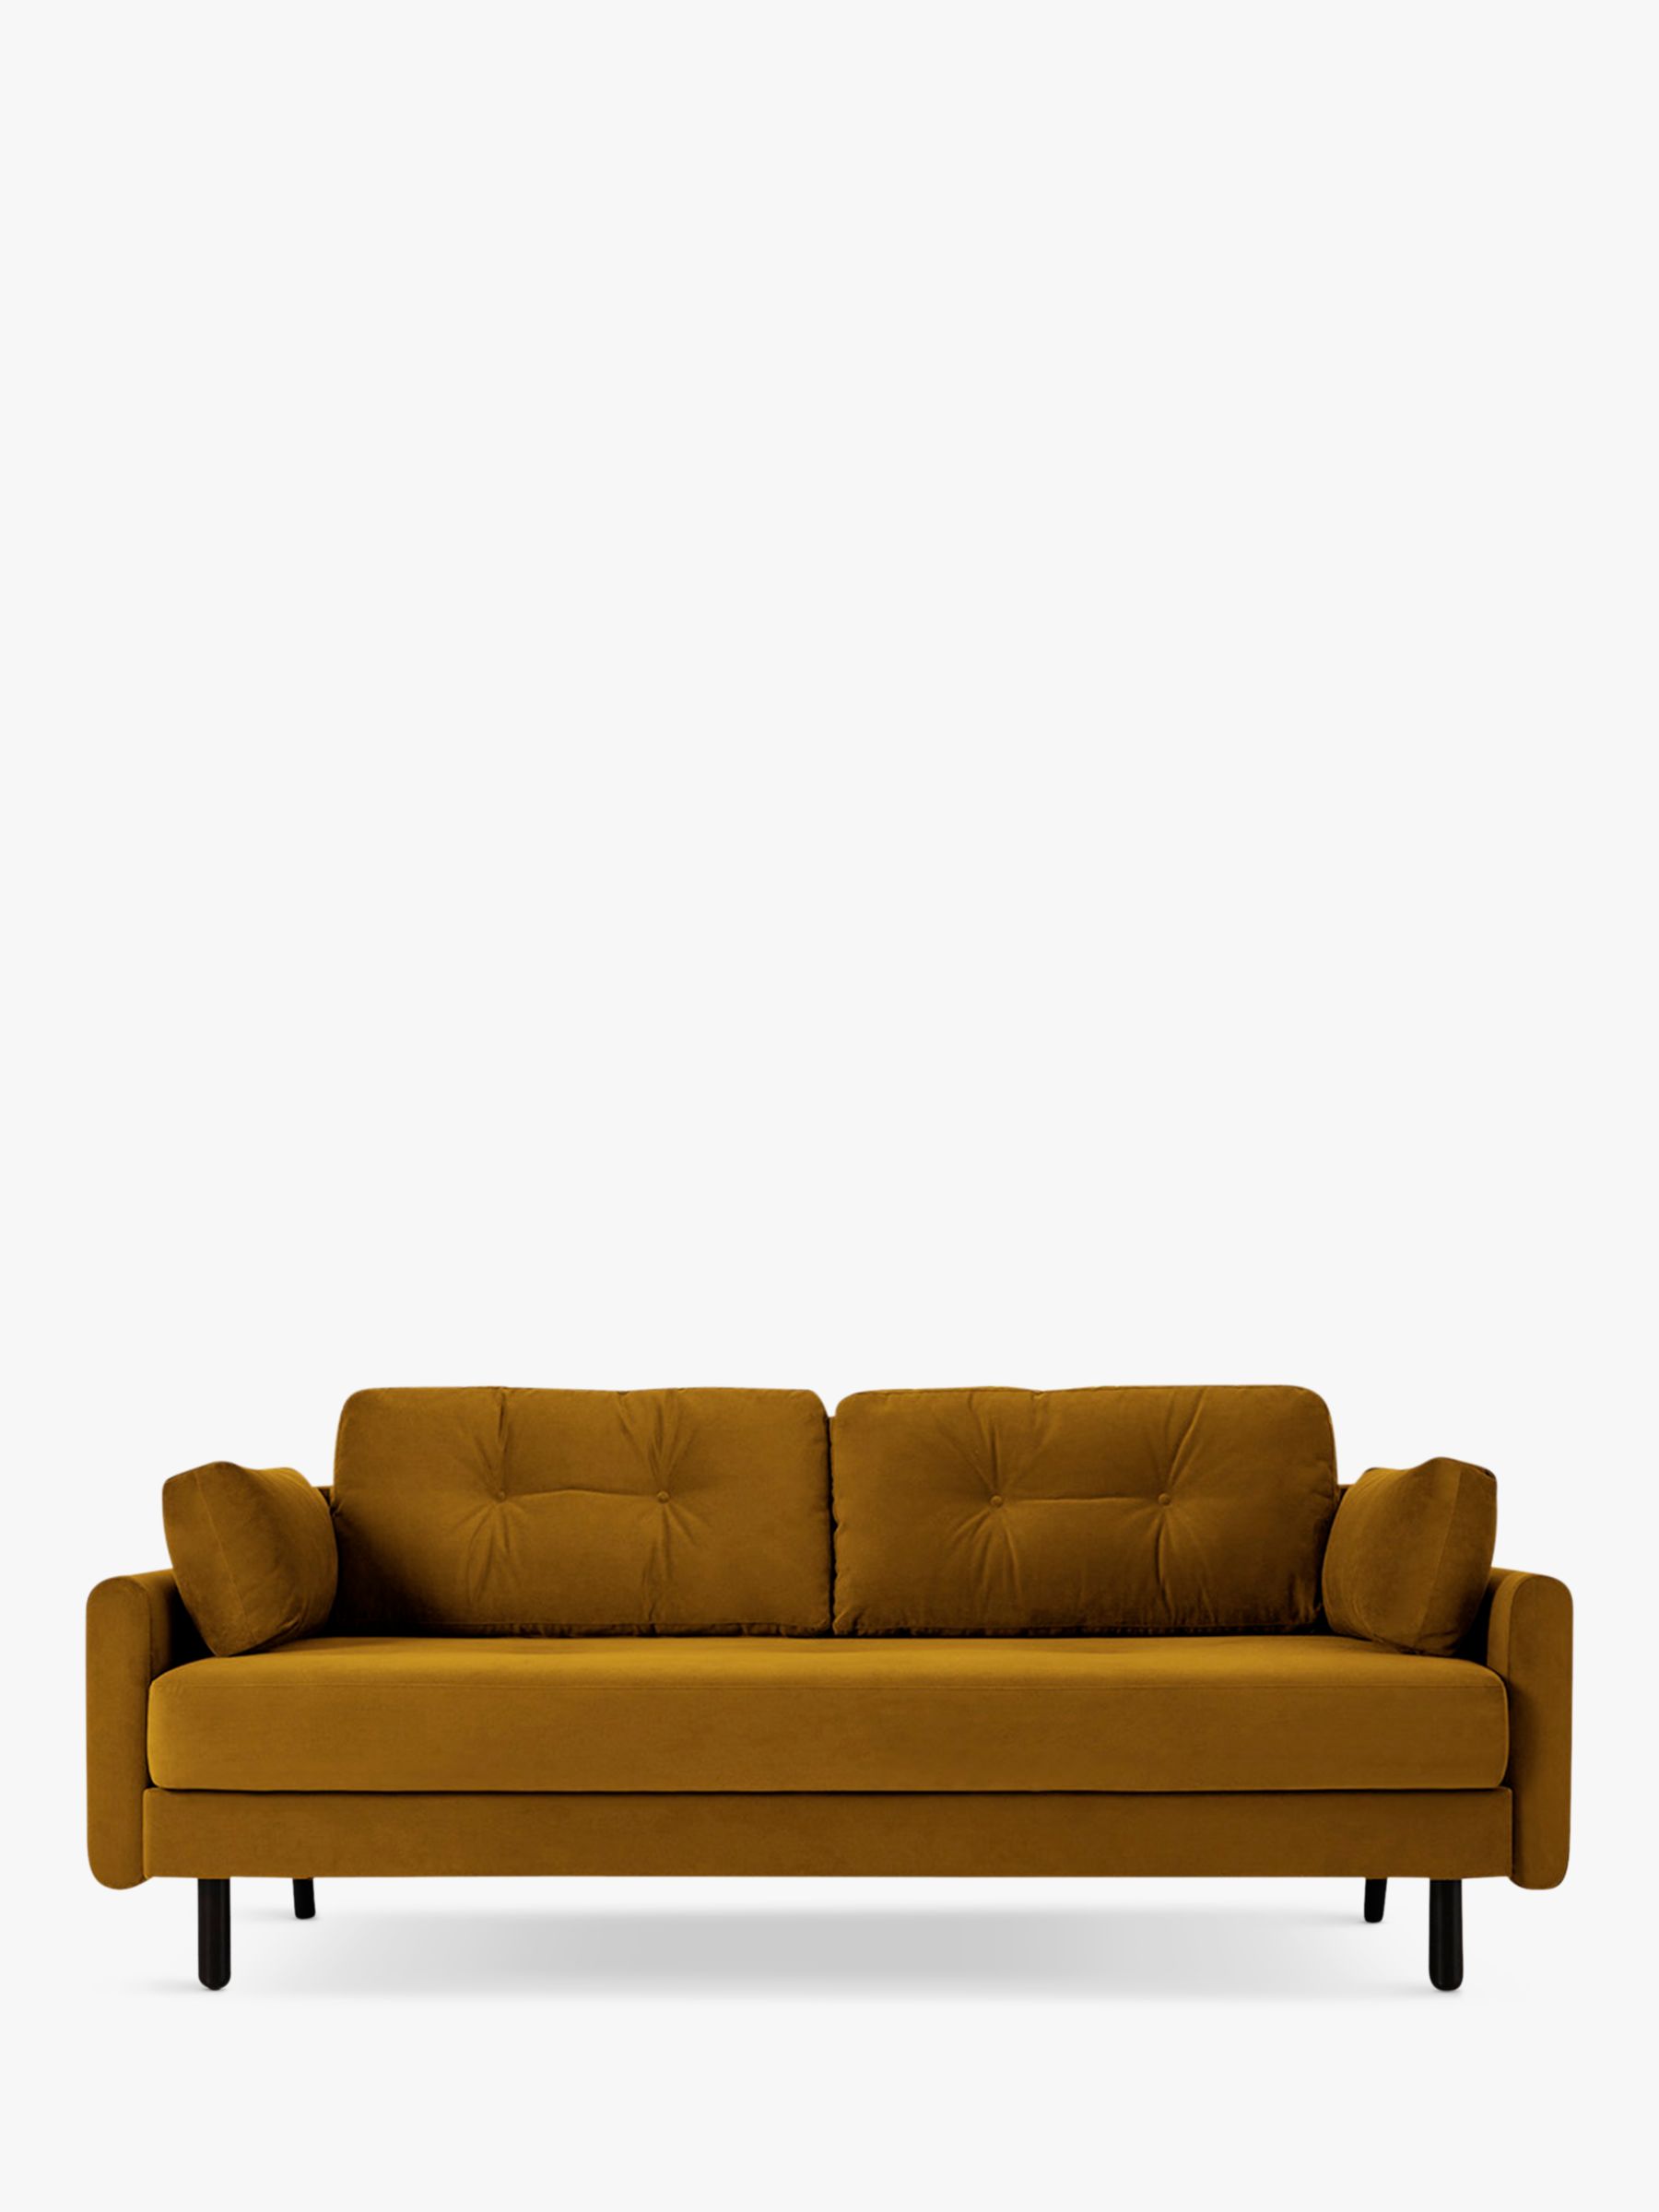 Model 04 Range, Swyft Model 04 Large 3 Seater Double Sofa Bed, Velvet Mustard